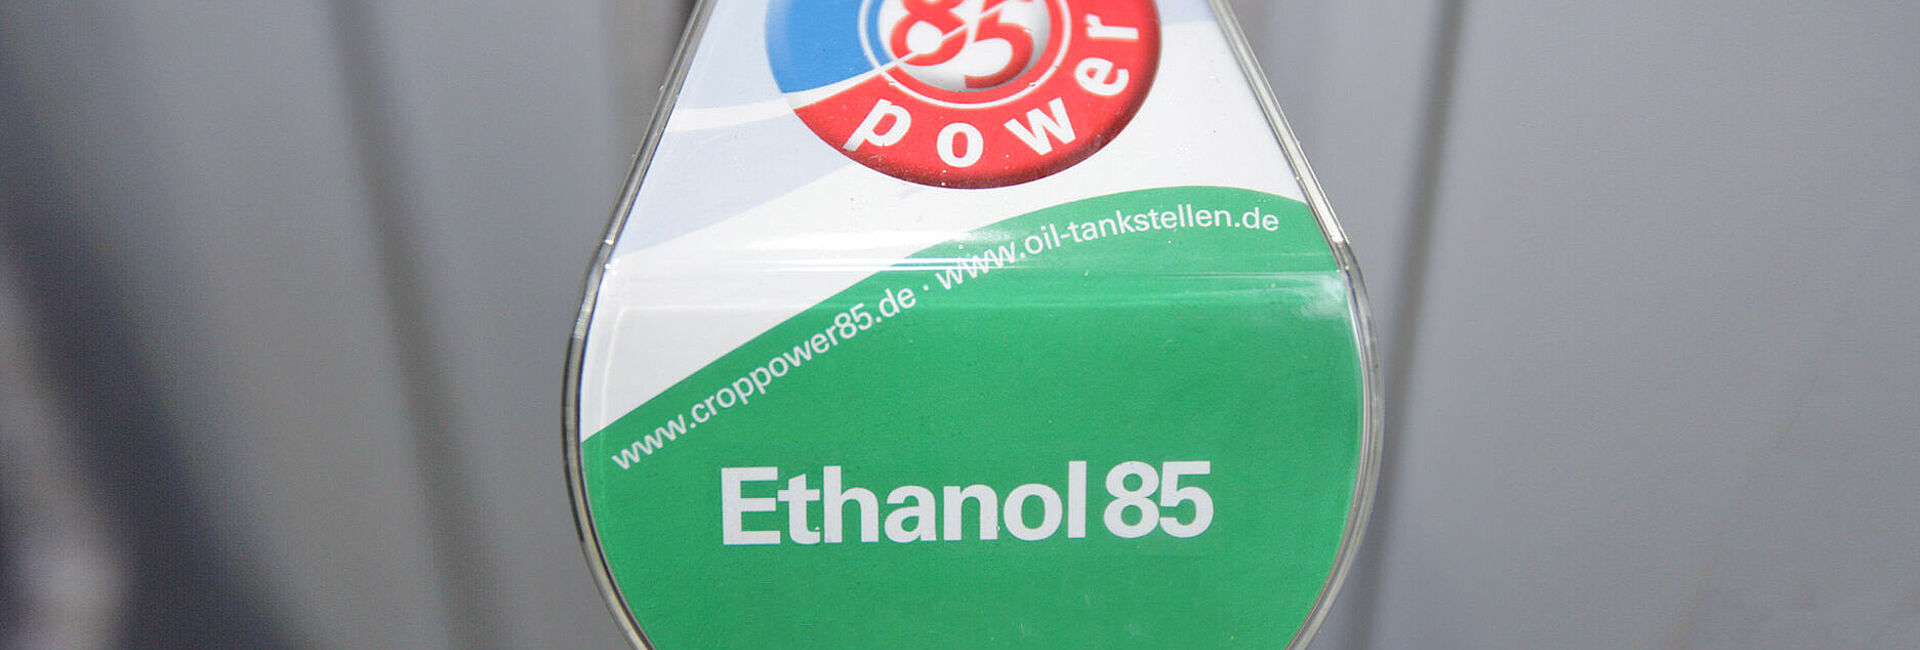 E85 an OIL!-Tankstellen in Hennef, Troisdorf und Saarlouis